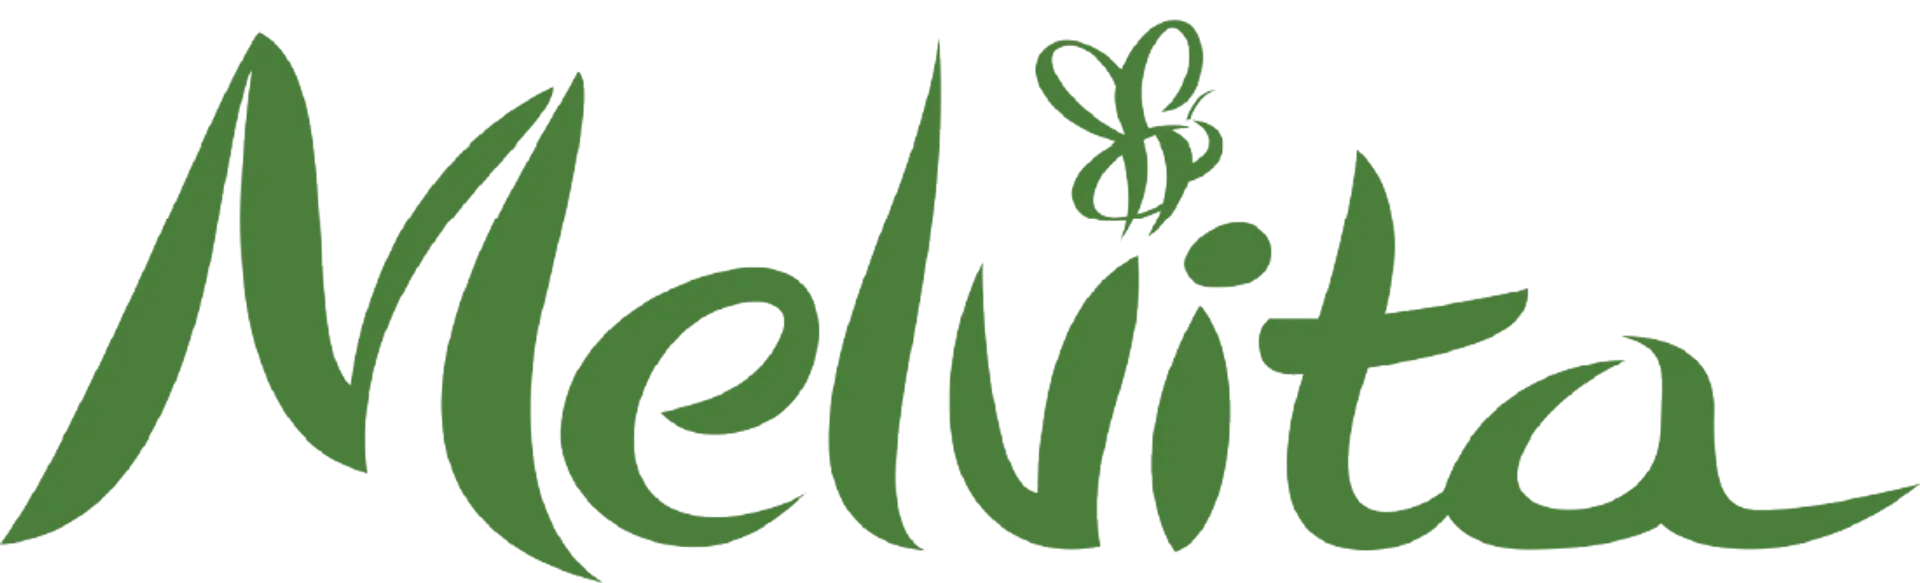 MELVITA logo